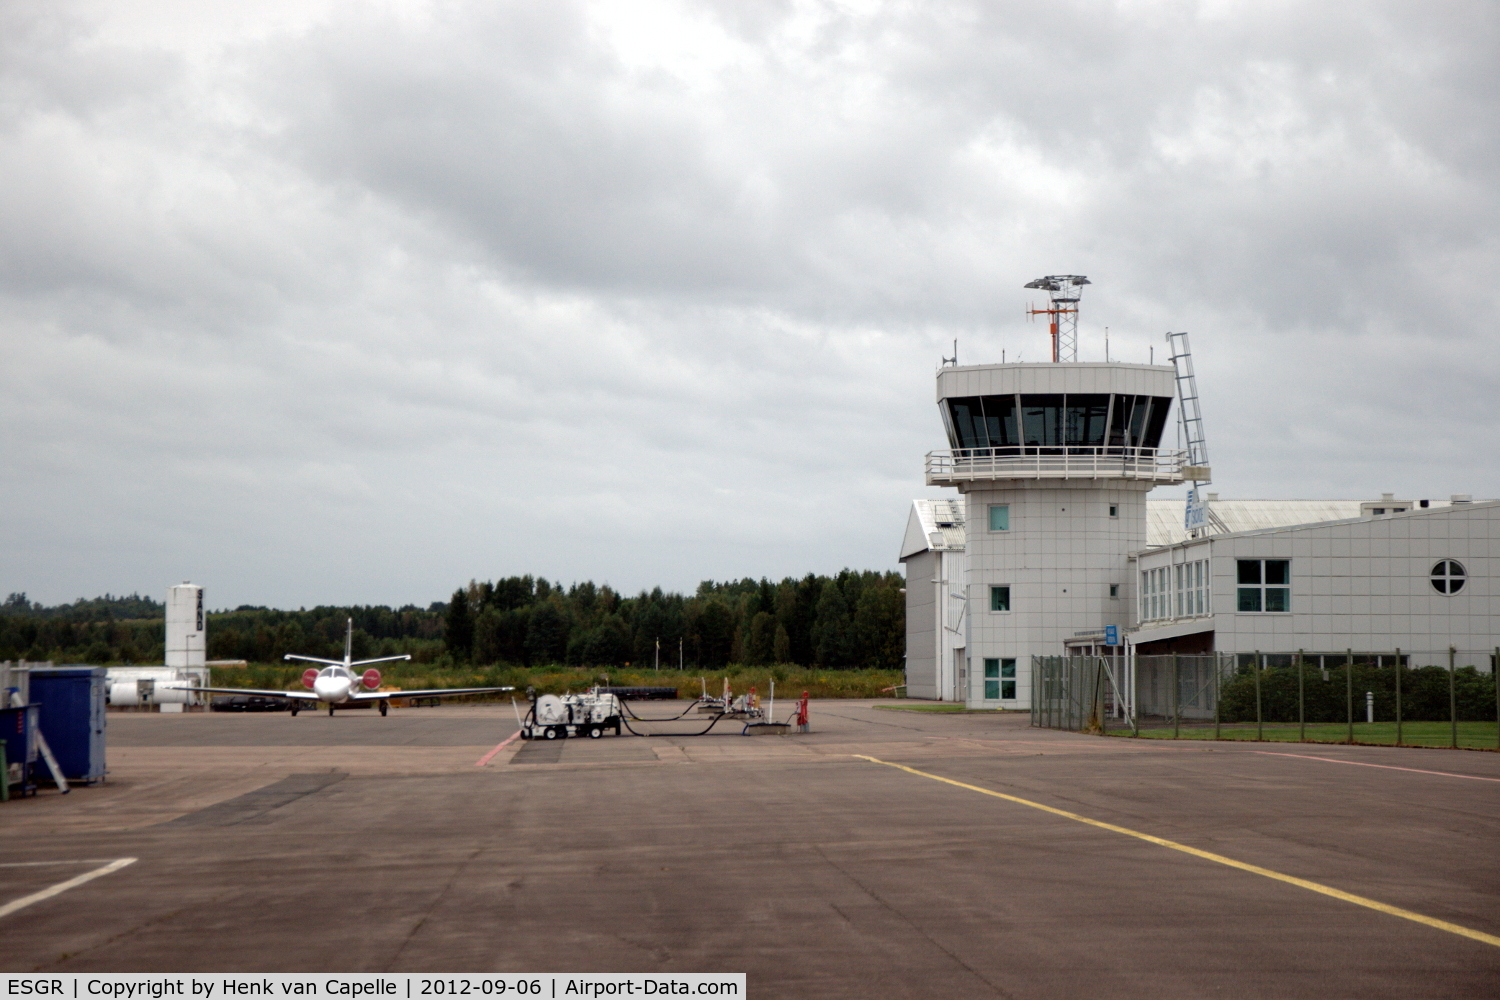 Skövde Airport, Skövde Sweden (ESGR) - Overview of platform and tower.